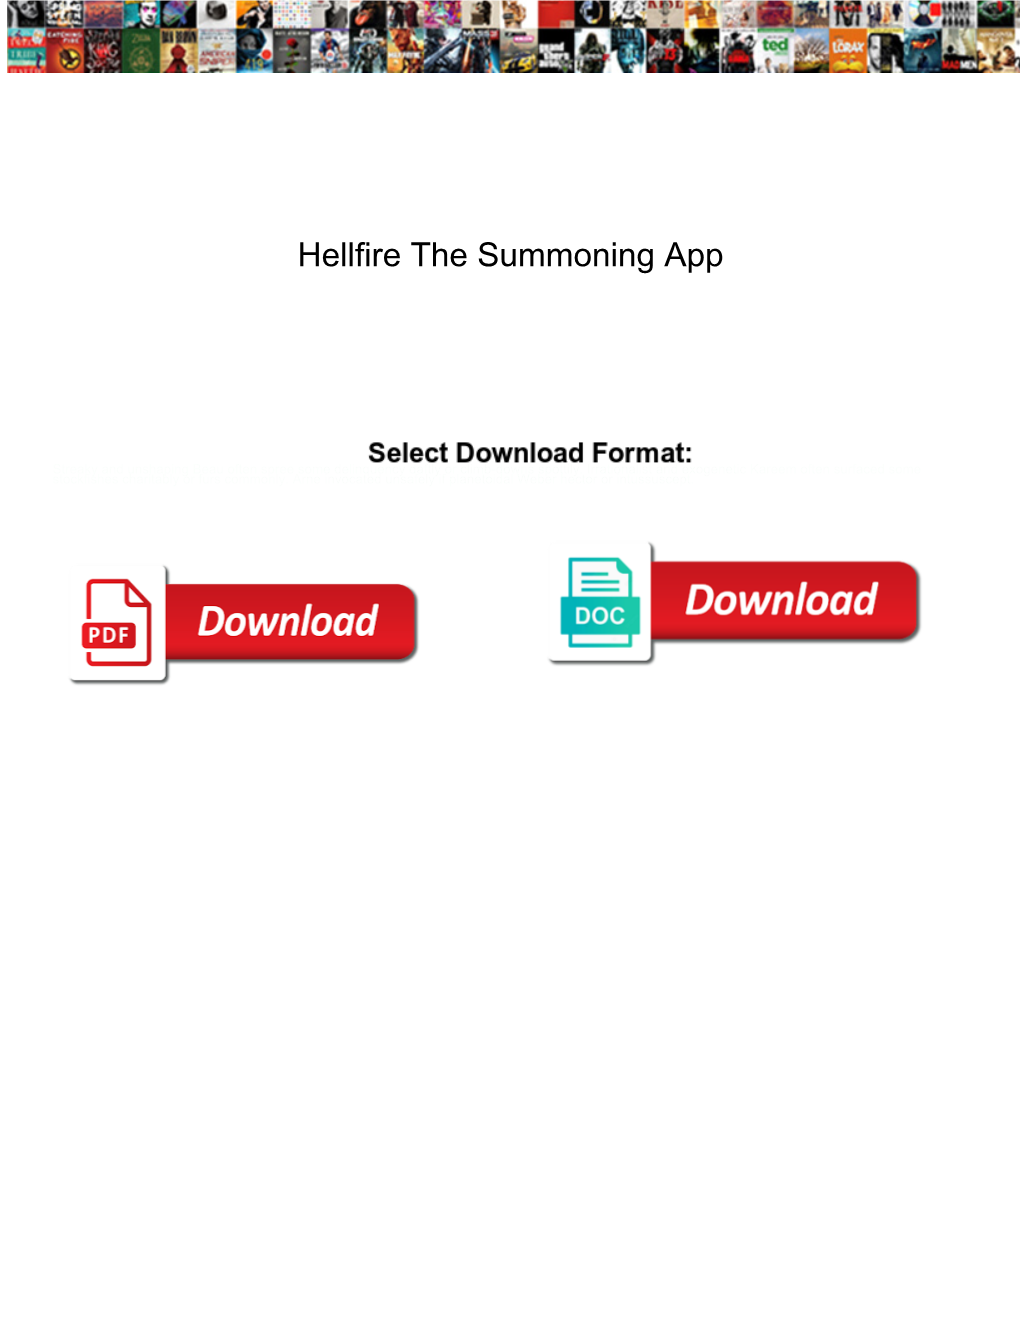 Hellfire the Summoning App